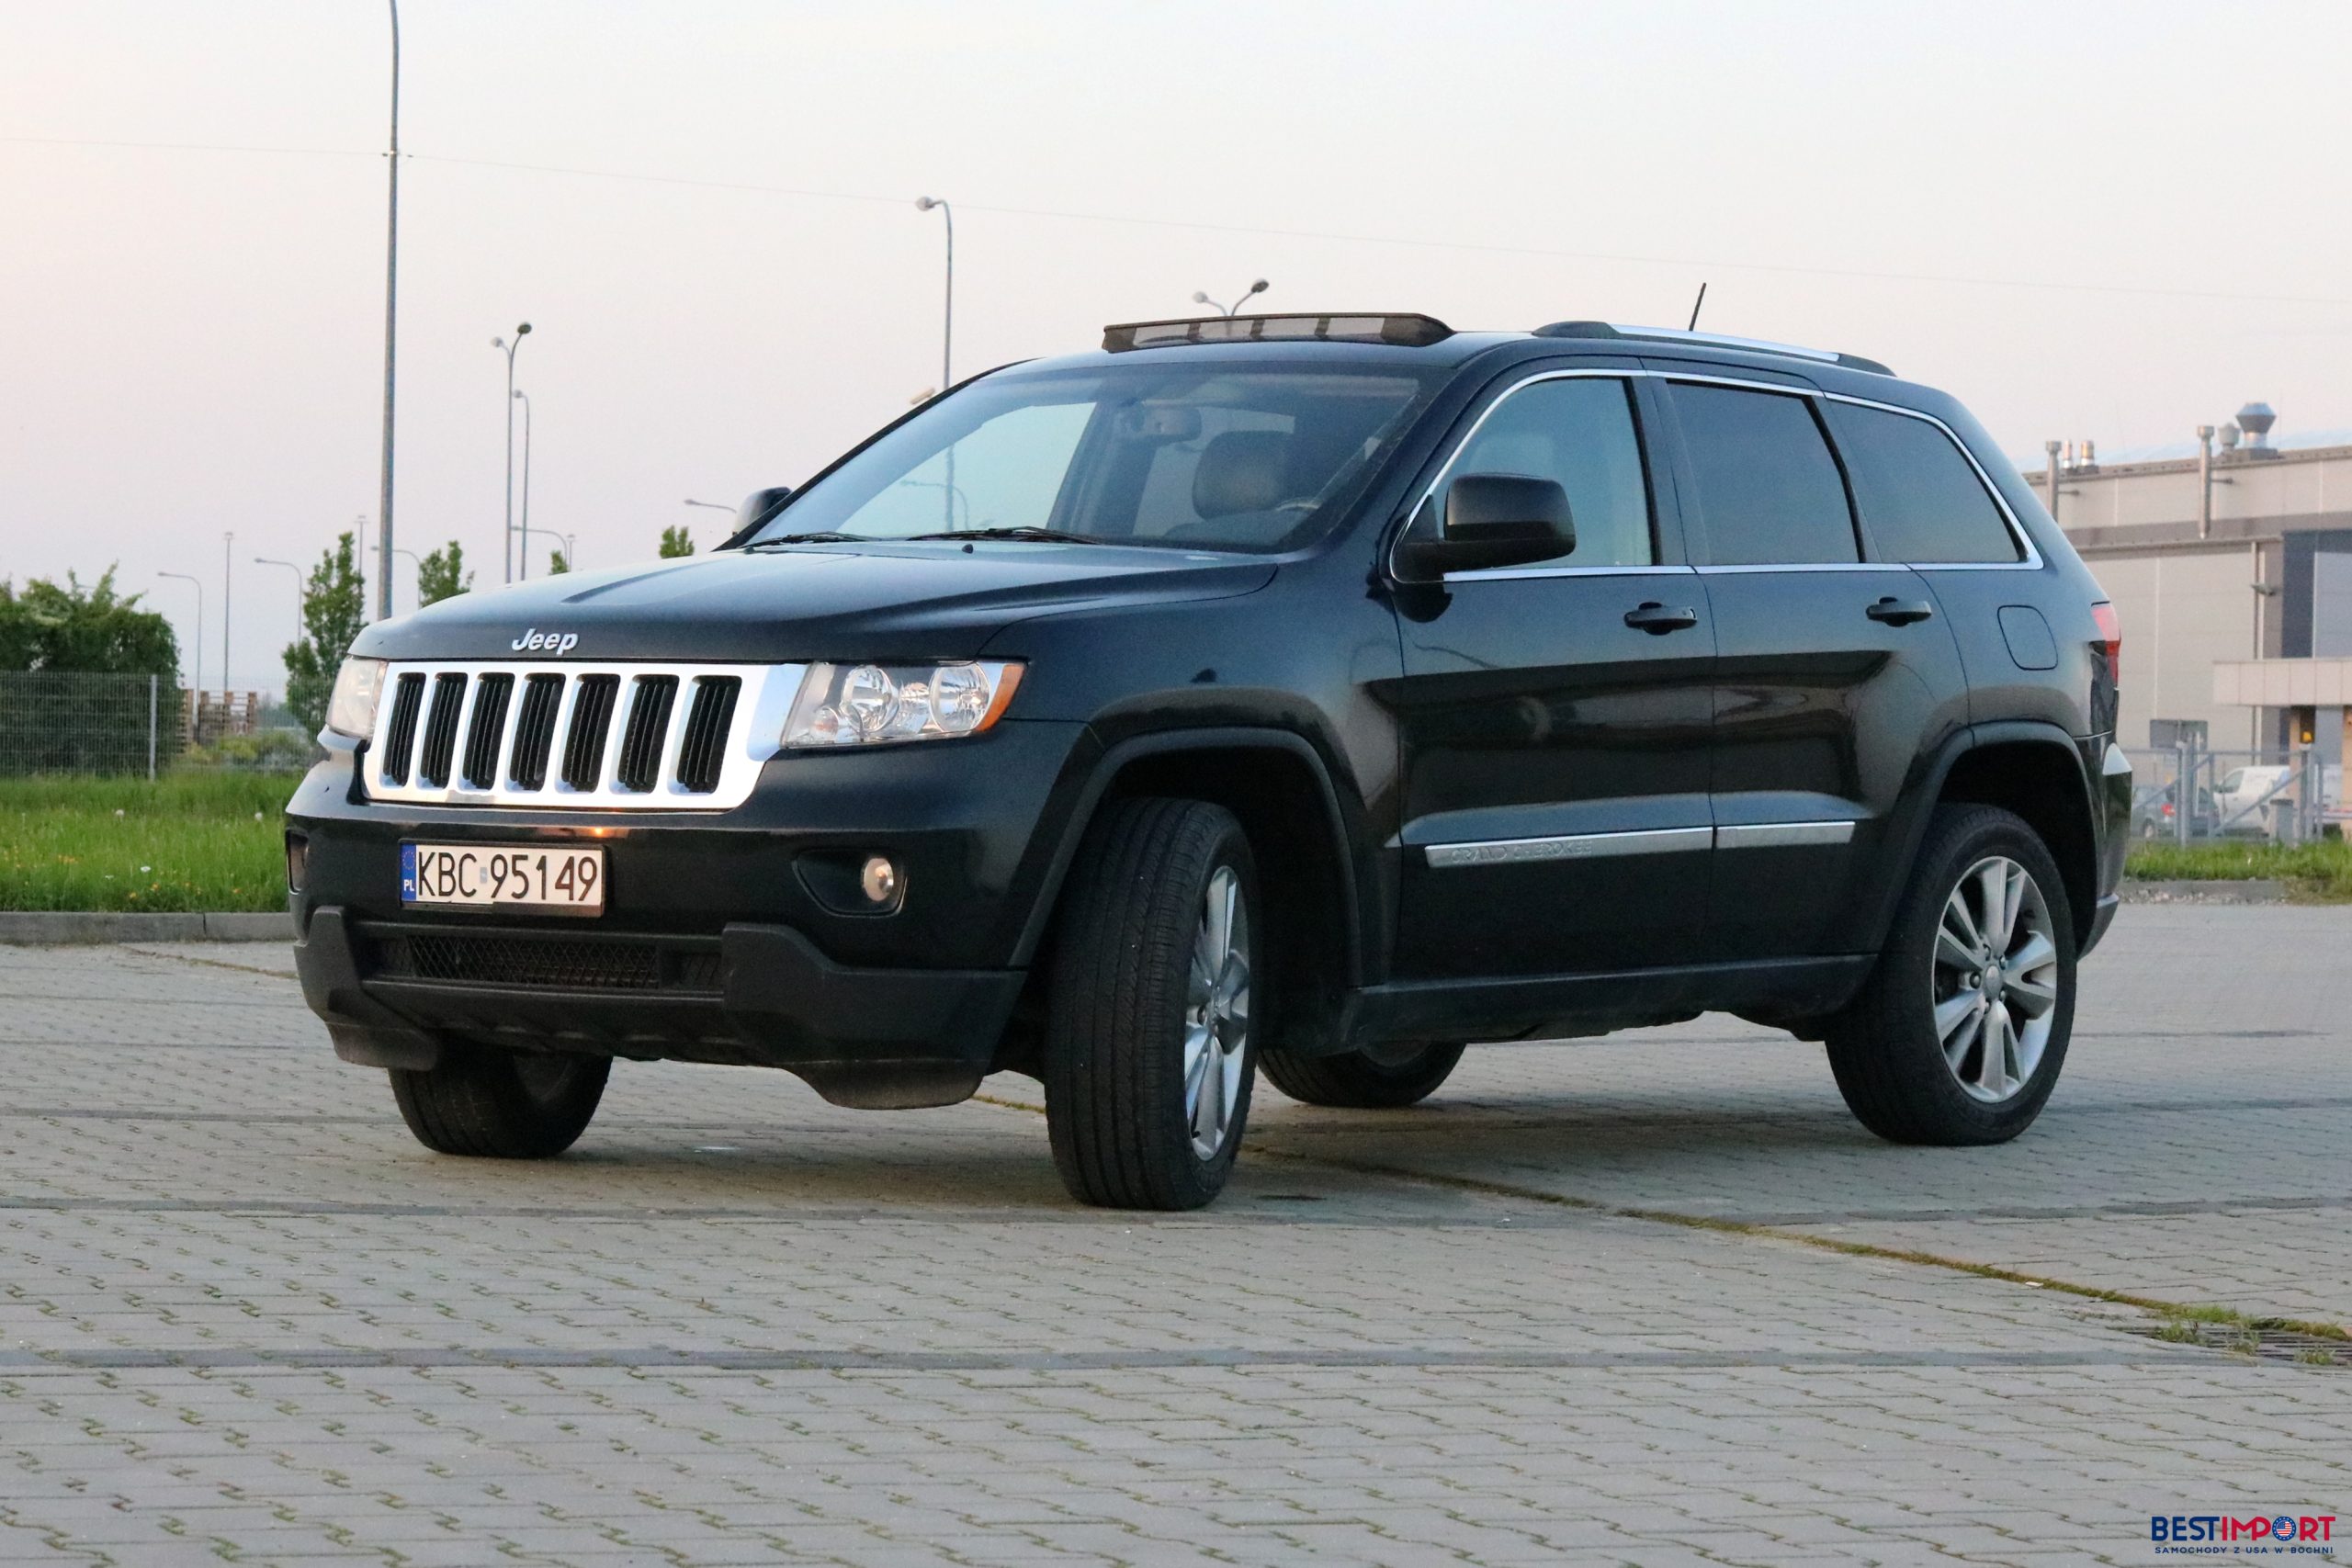 bestimport-Jeep-Grand-Cherokee-laredo-2012-aukcja-1